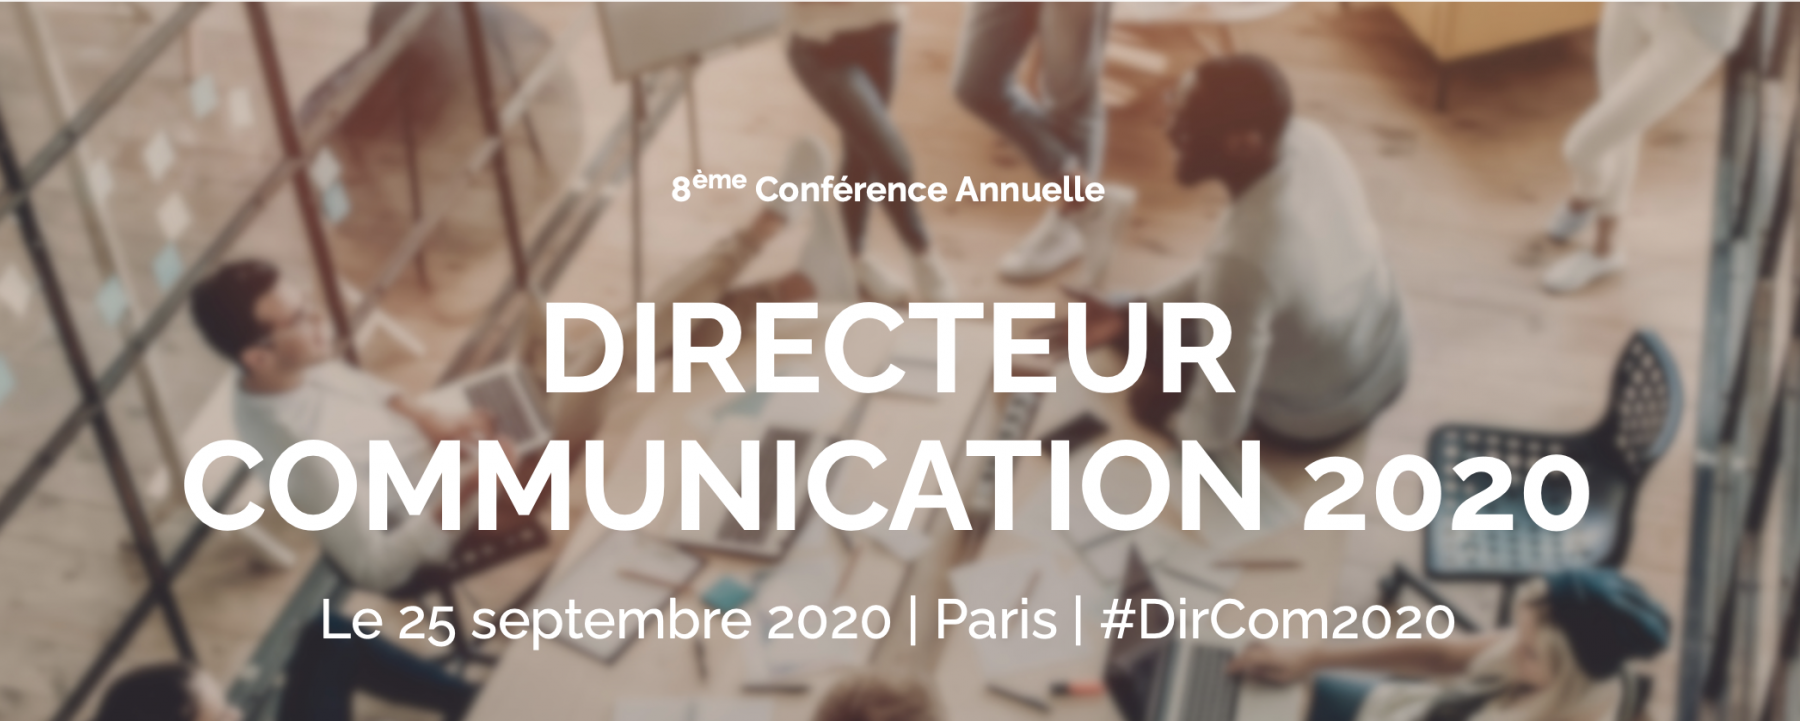 Directeur communication 2020 - 8e conférence annuelle organisée par DII le 25 septembre 2020 